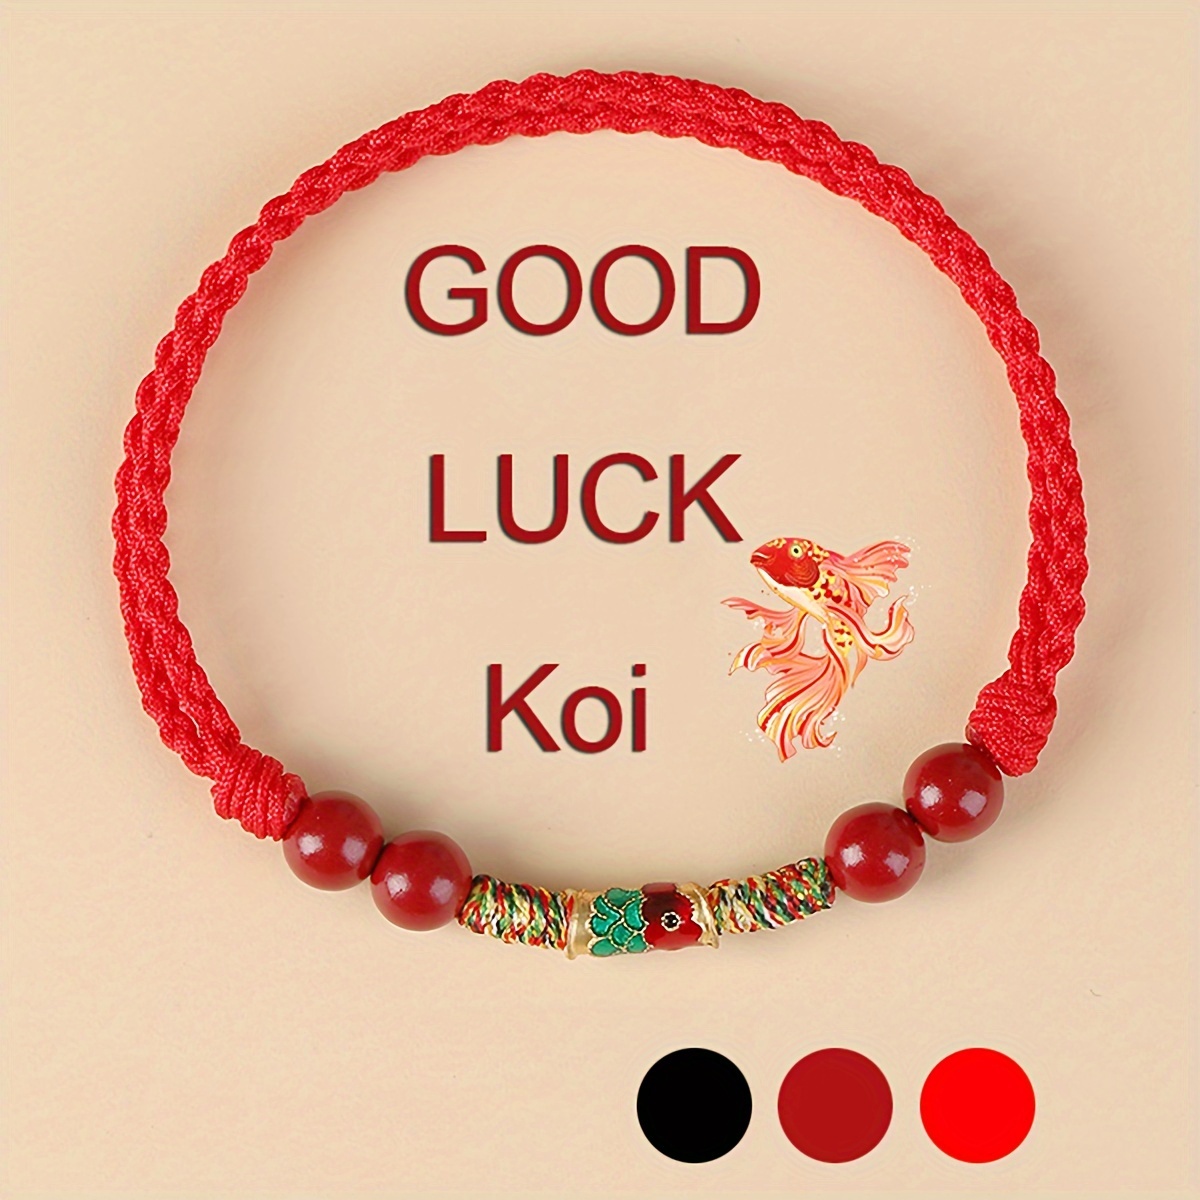 

1pc Cinnabar Lucky Koi Bracelet, Red Rope Woven Bracelet For Good Luck And Prosperity